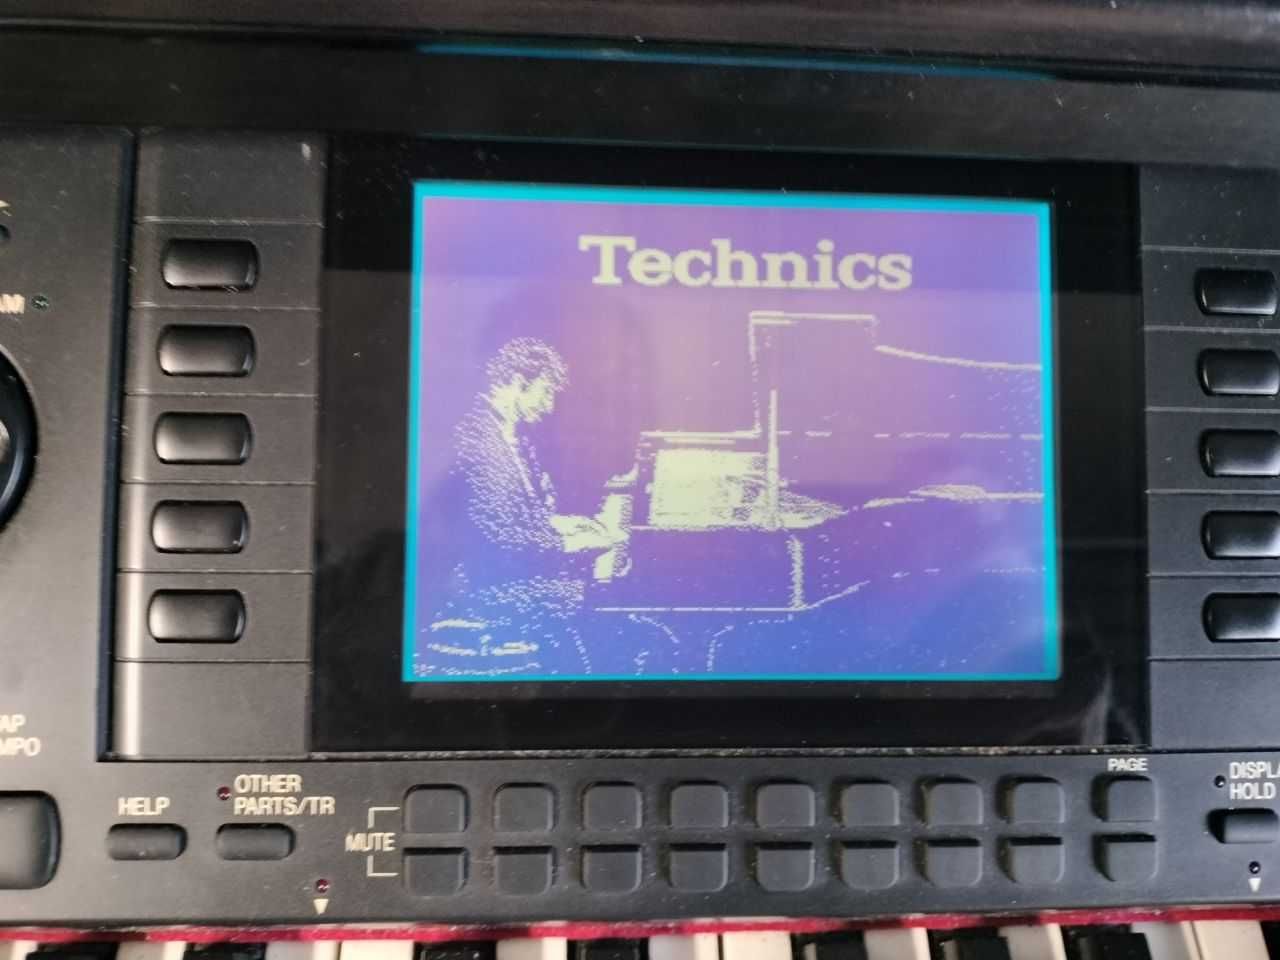 3 x pianina Roland,Yamaha,Technics